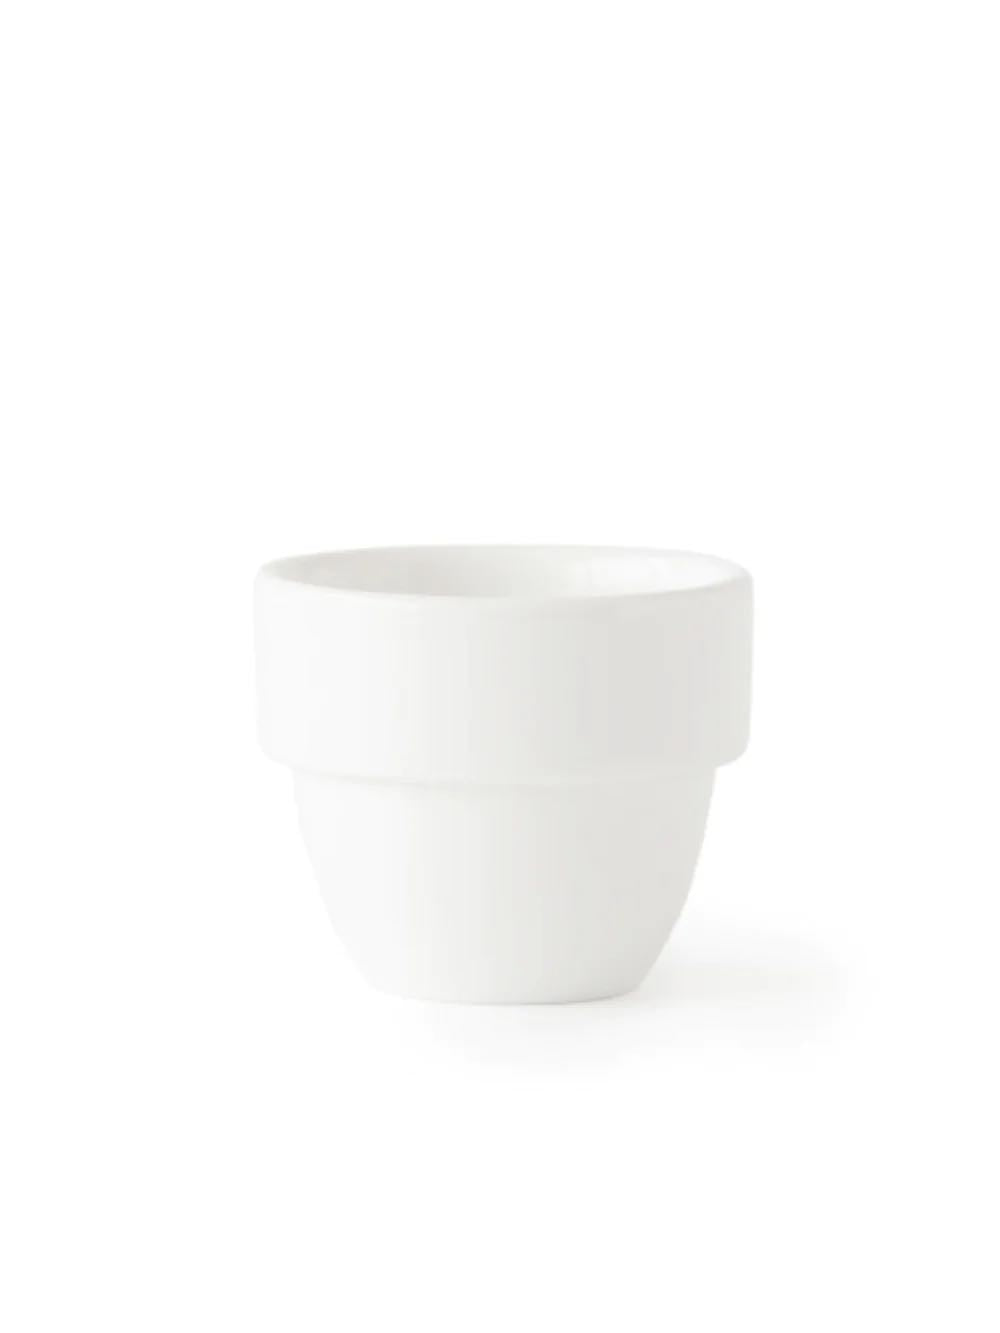 ACME Tasse pour cupping  (110ml/3.72oz) - Bol à café - Image 1